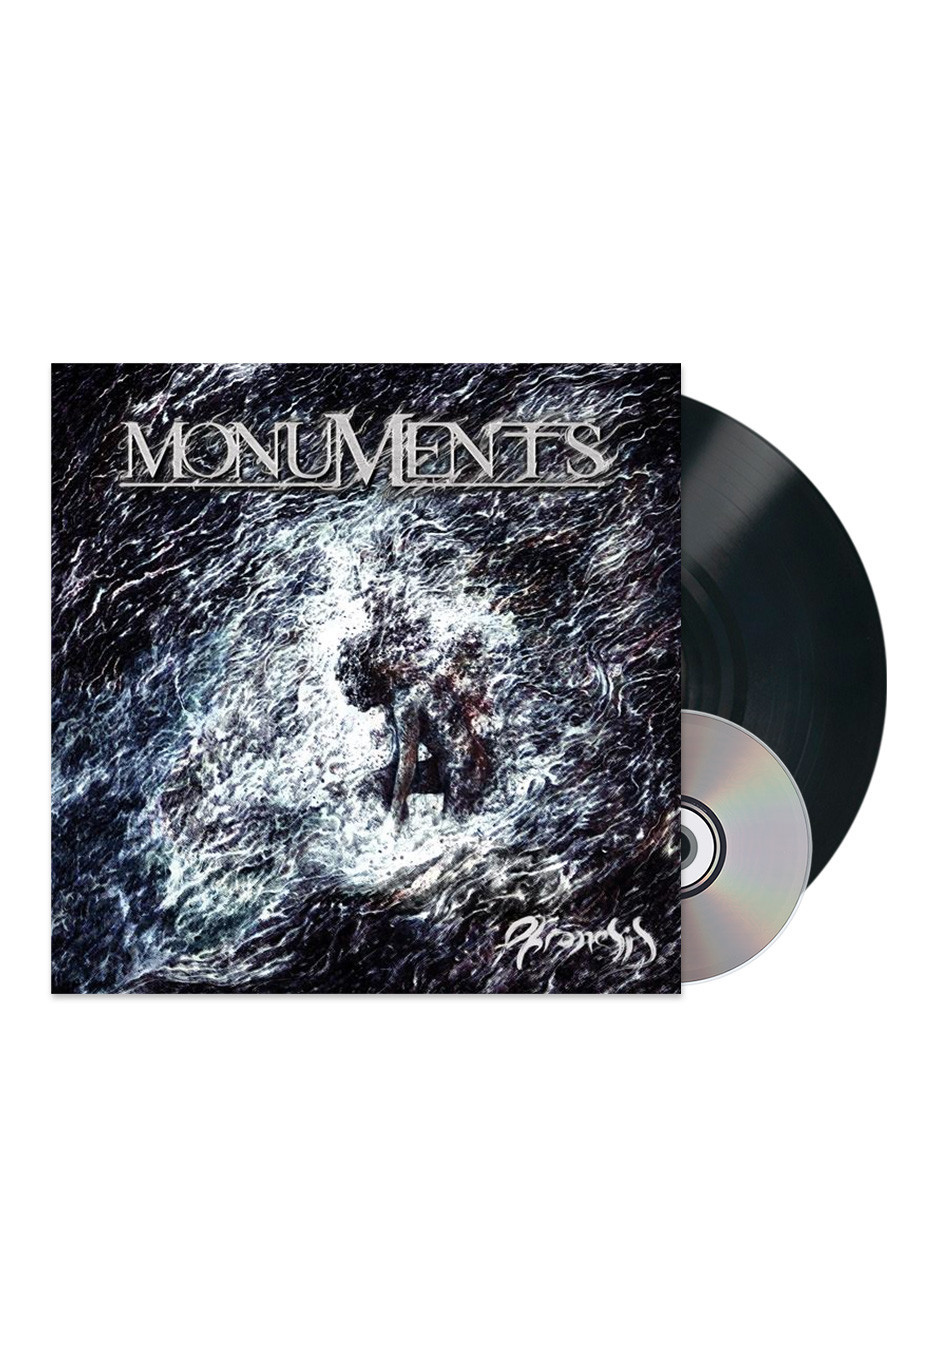 Monuments - Phronesis - Vinyl